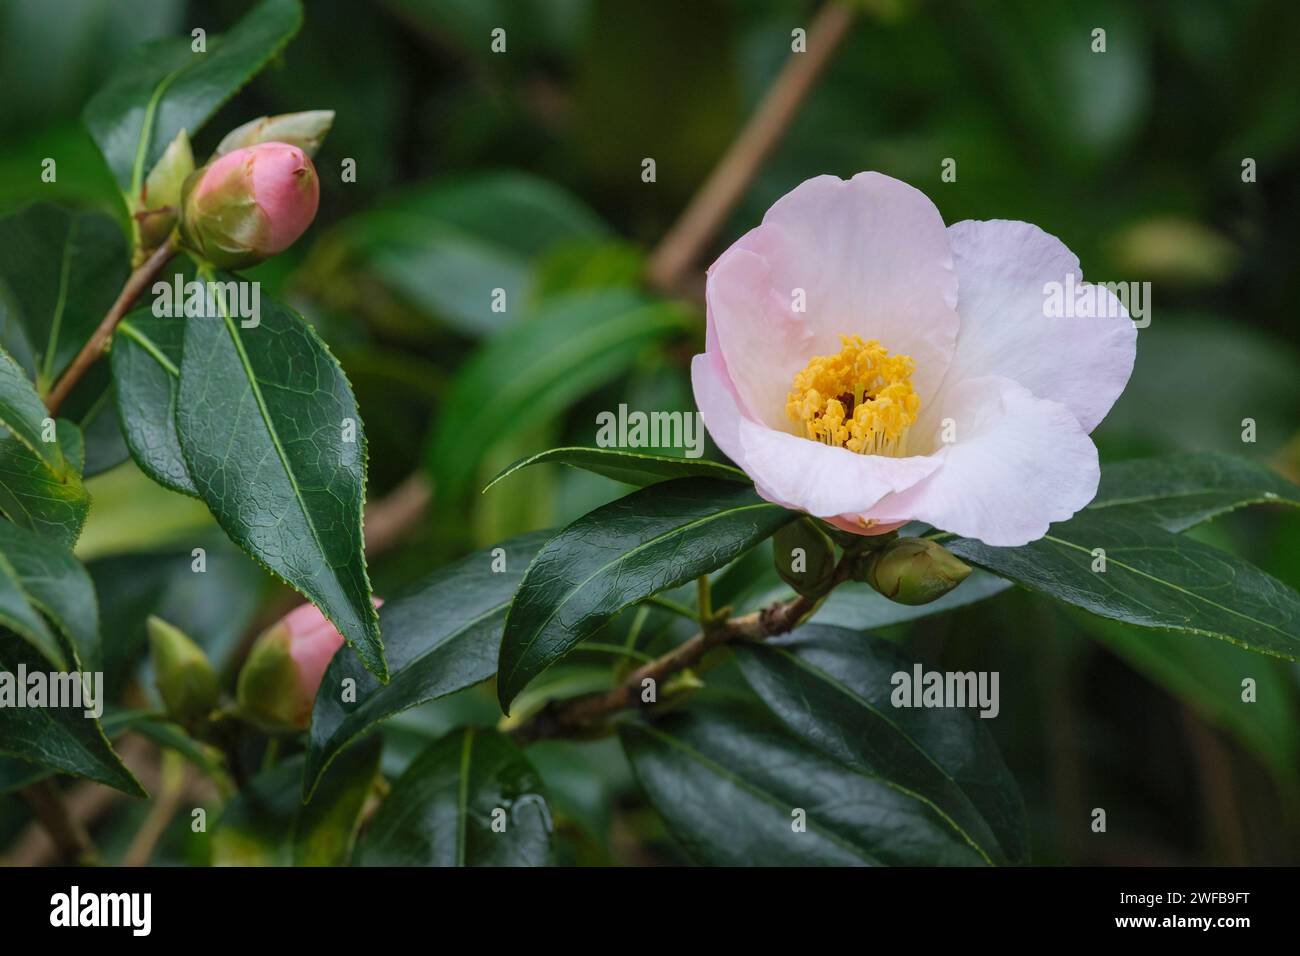 Camellia williamsii Hiraethlyn, camellia Hiraethlyn, arbusto de hoja perenne, flores solteras de color rosa pálido, prominentes estambres amarillos Foto de stock